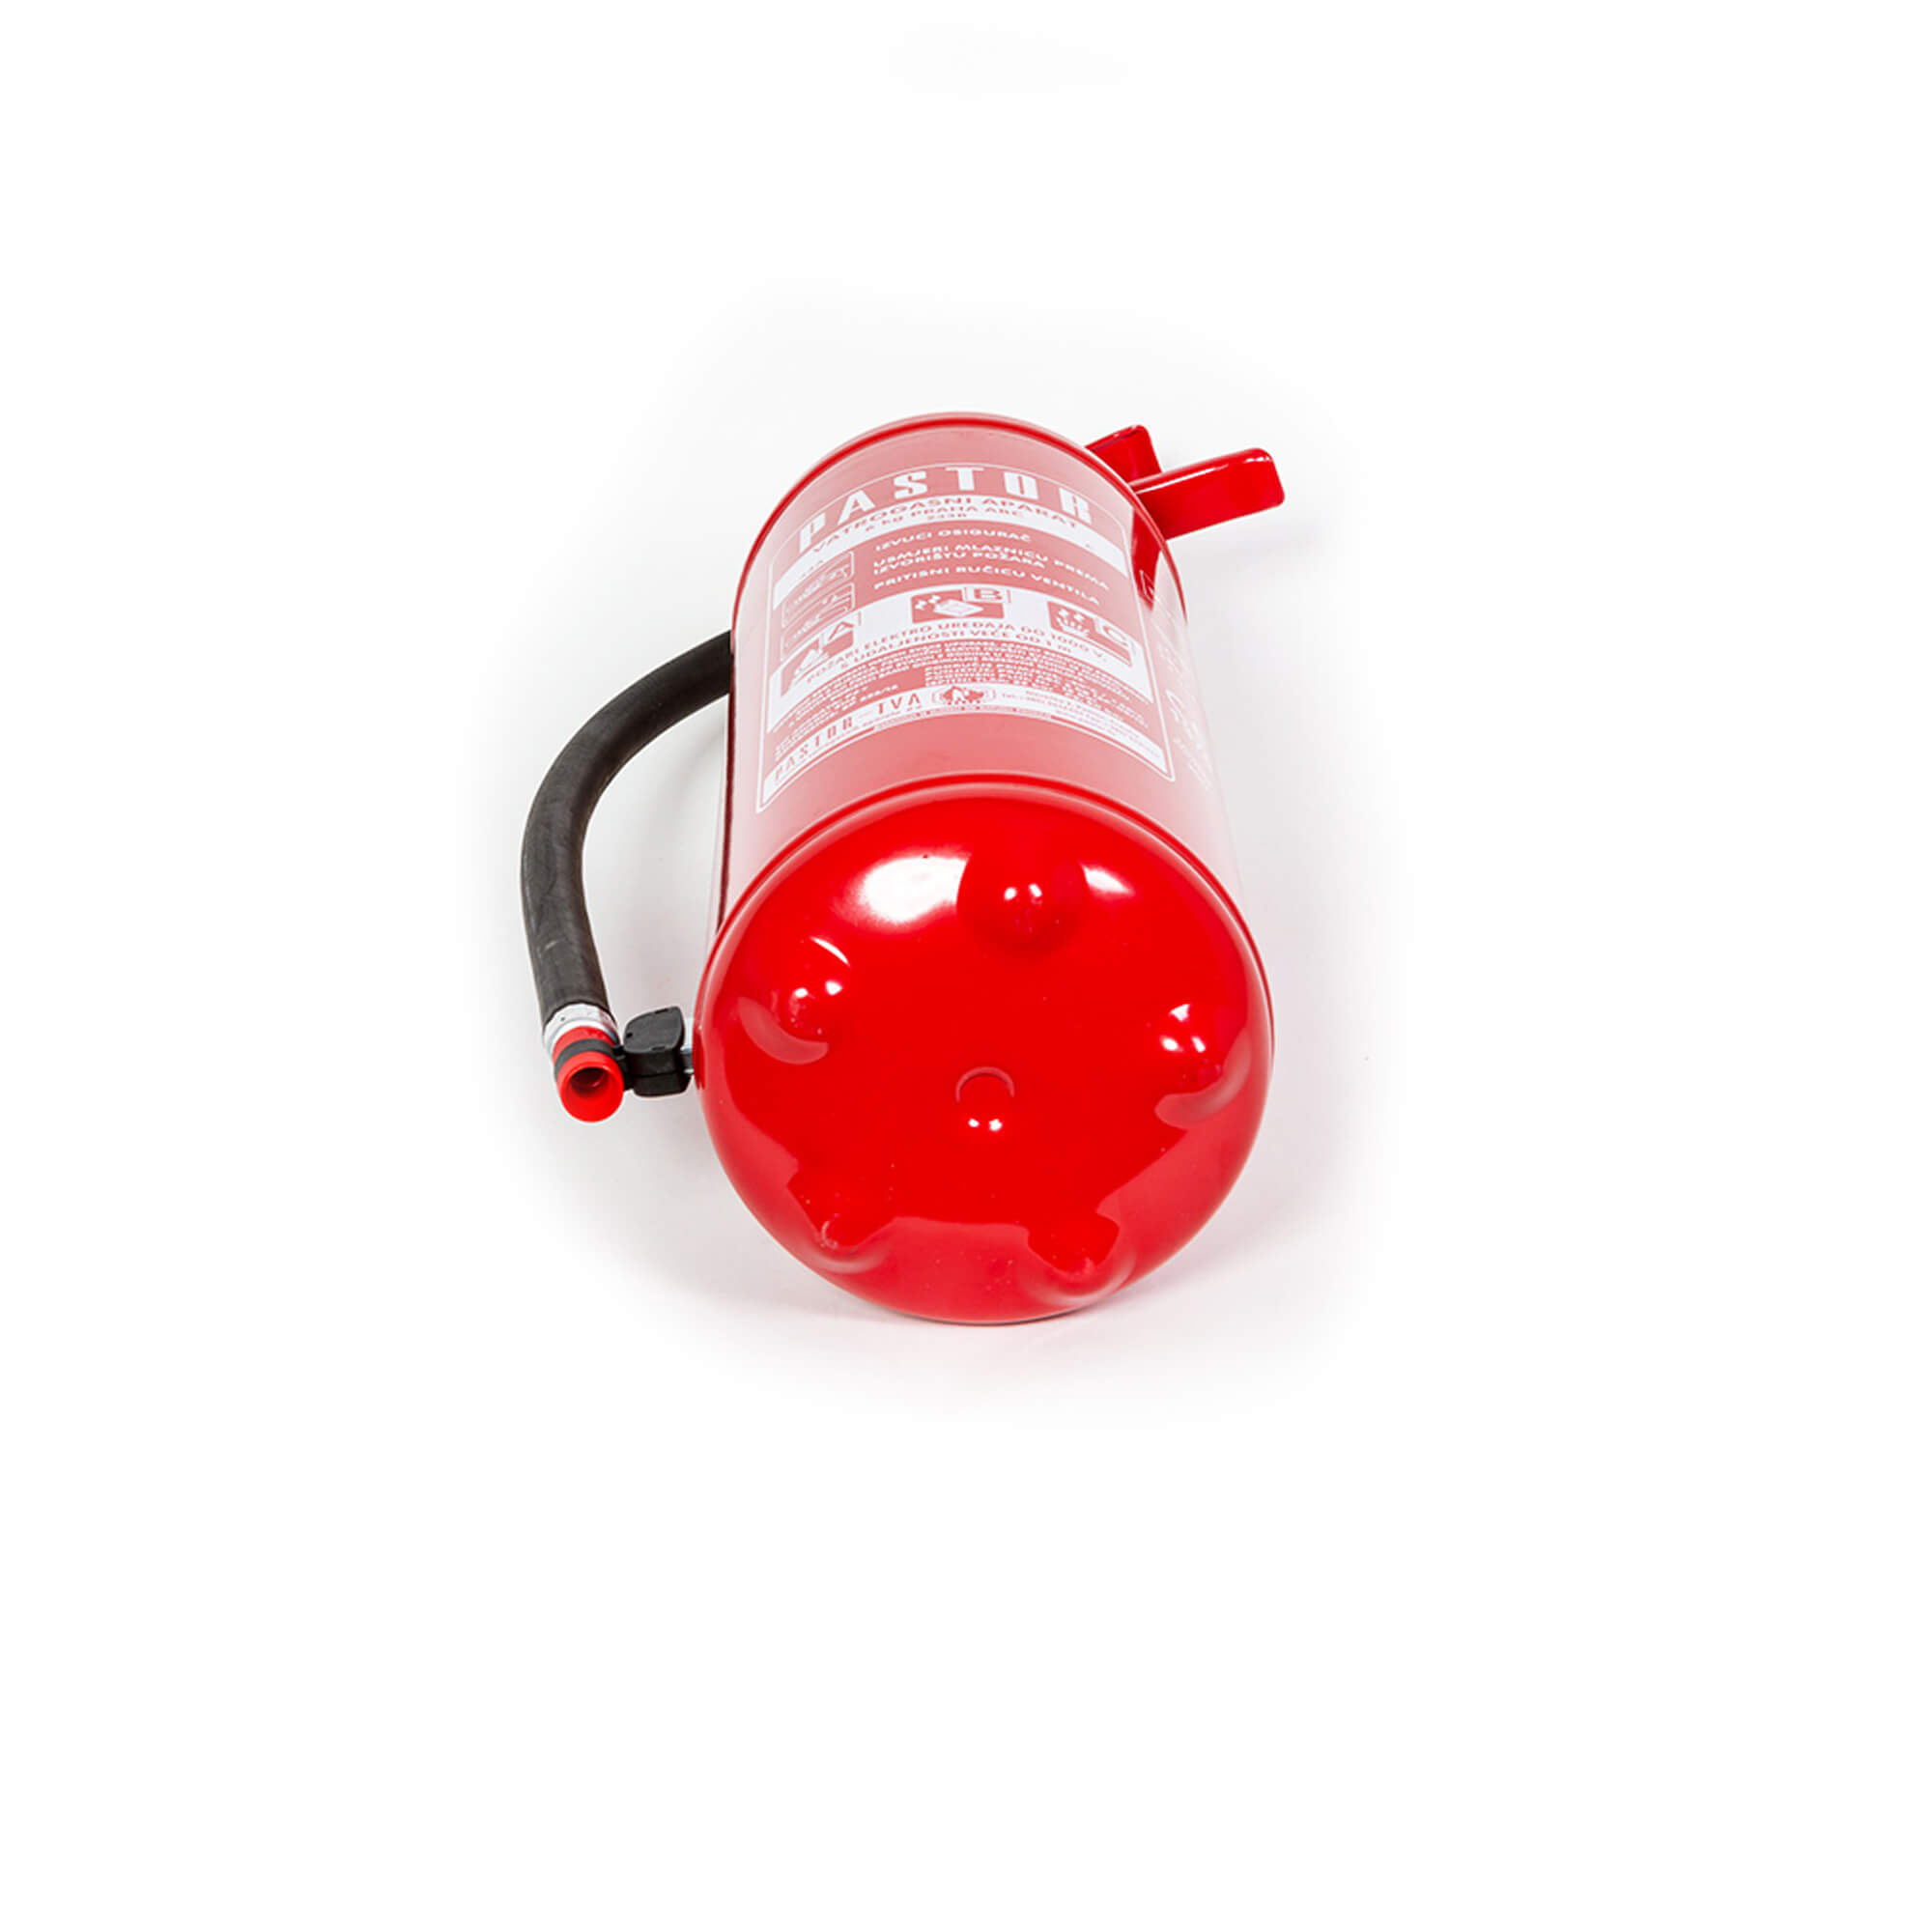 fire extinguisher 6kg under constant pressure